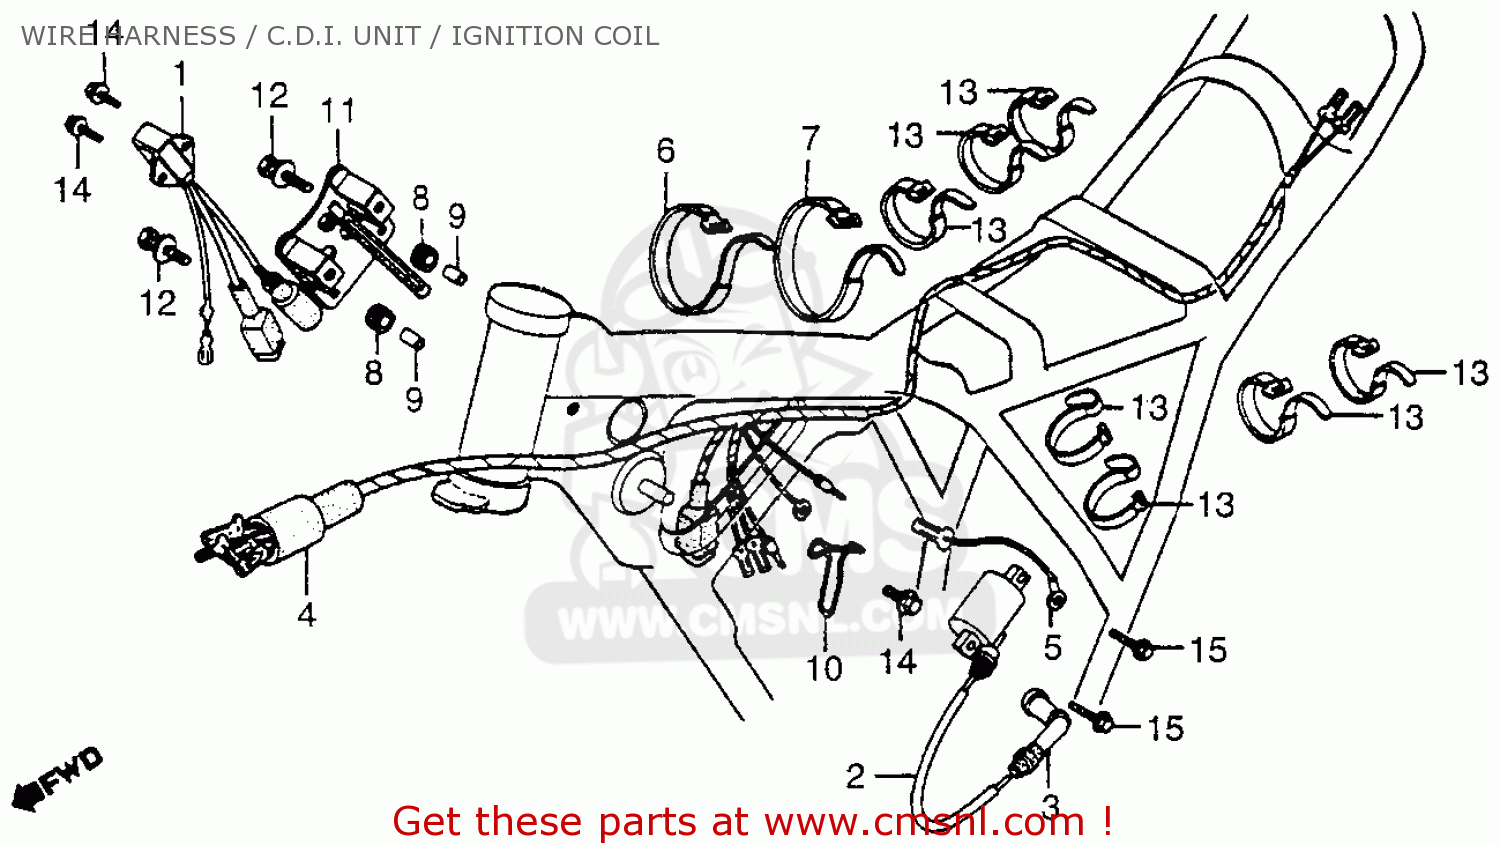 1979 Honda Cb750 Wiring Diagram Pics - Wiring Diagram Sample